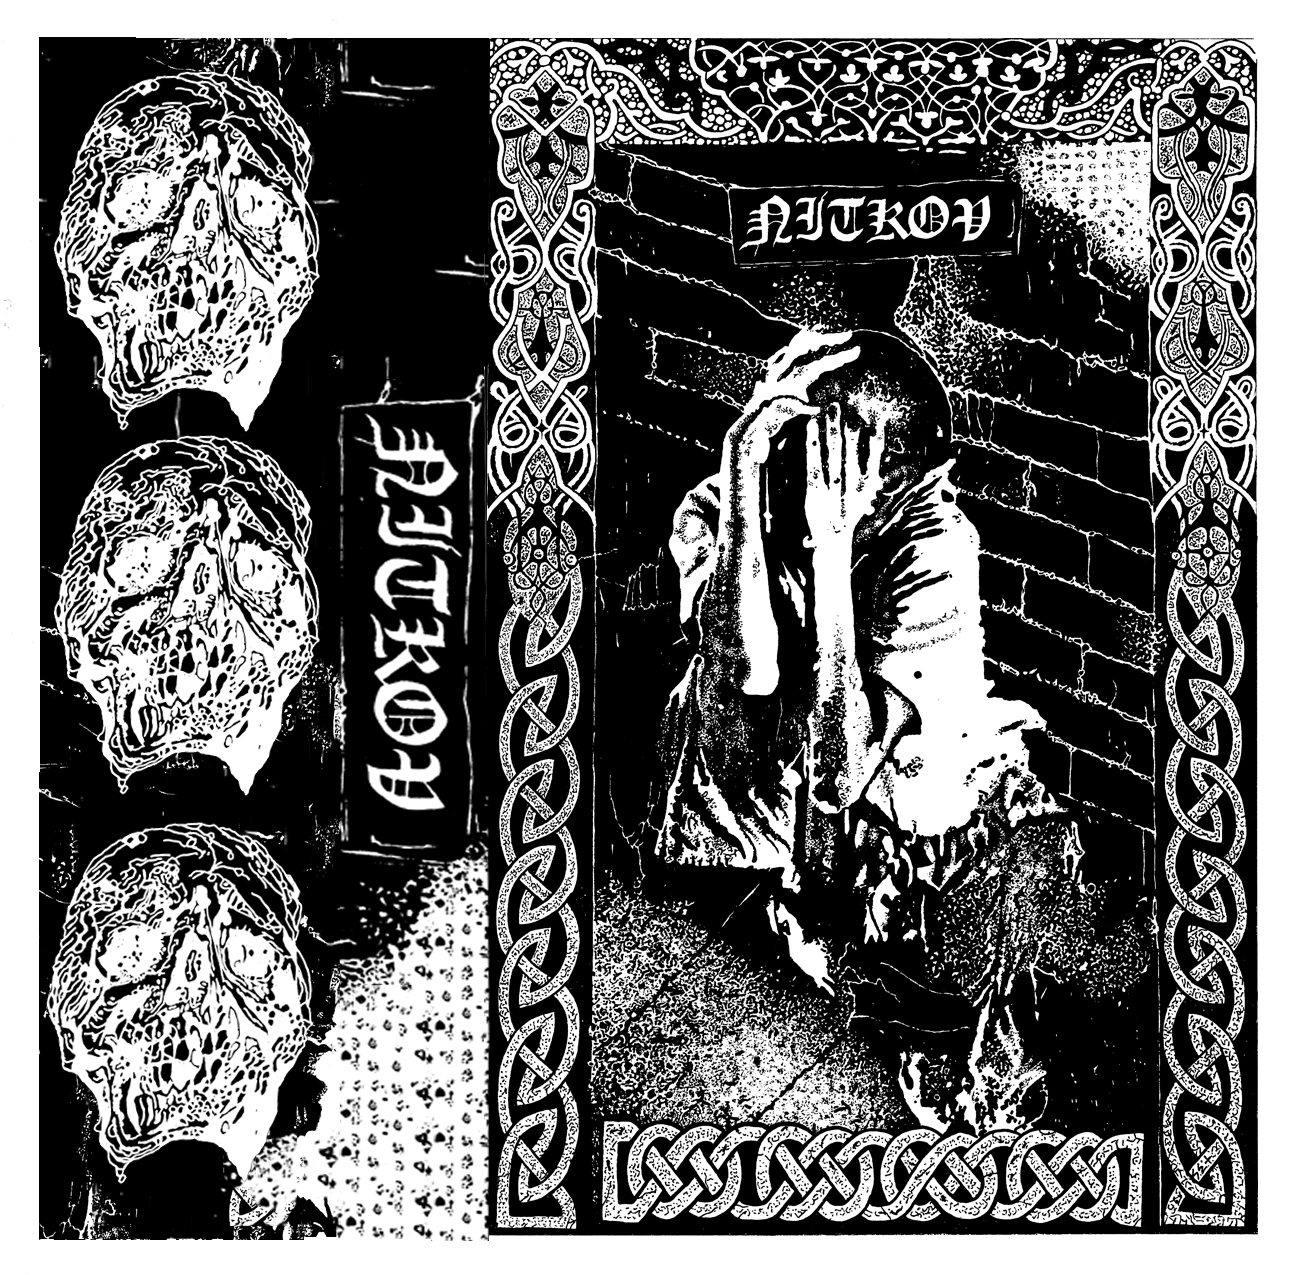 NITKOV demo cassette cover